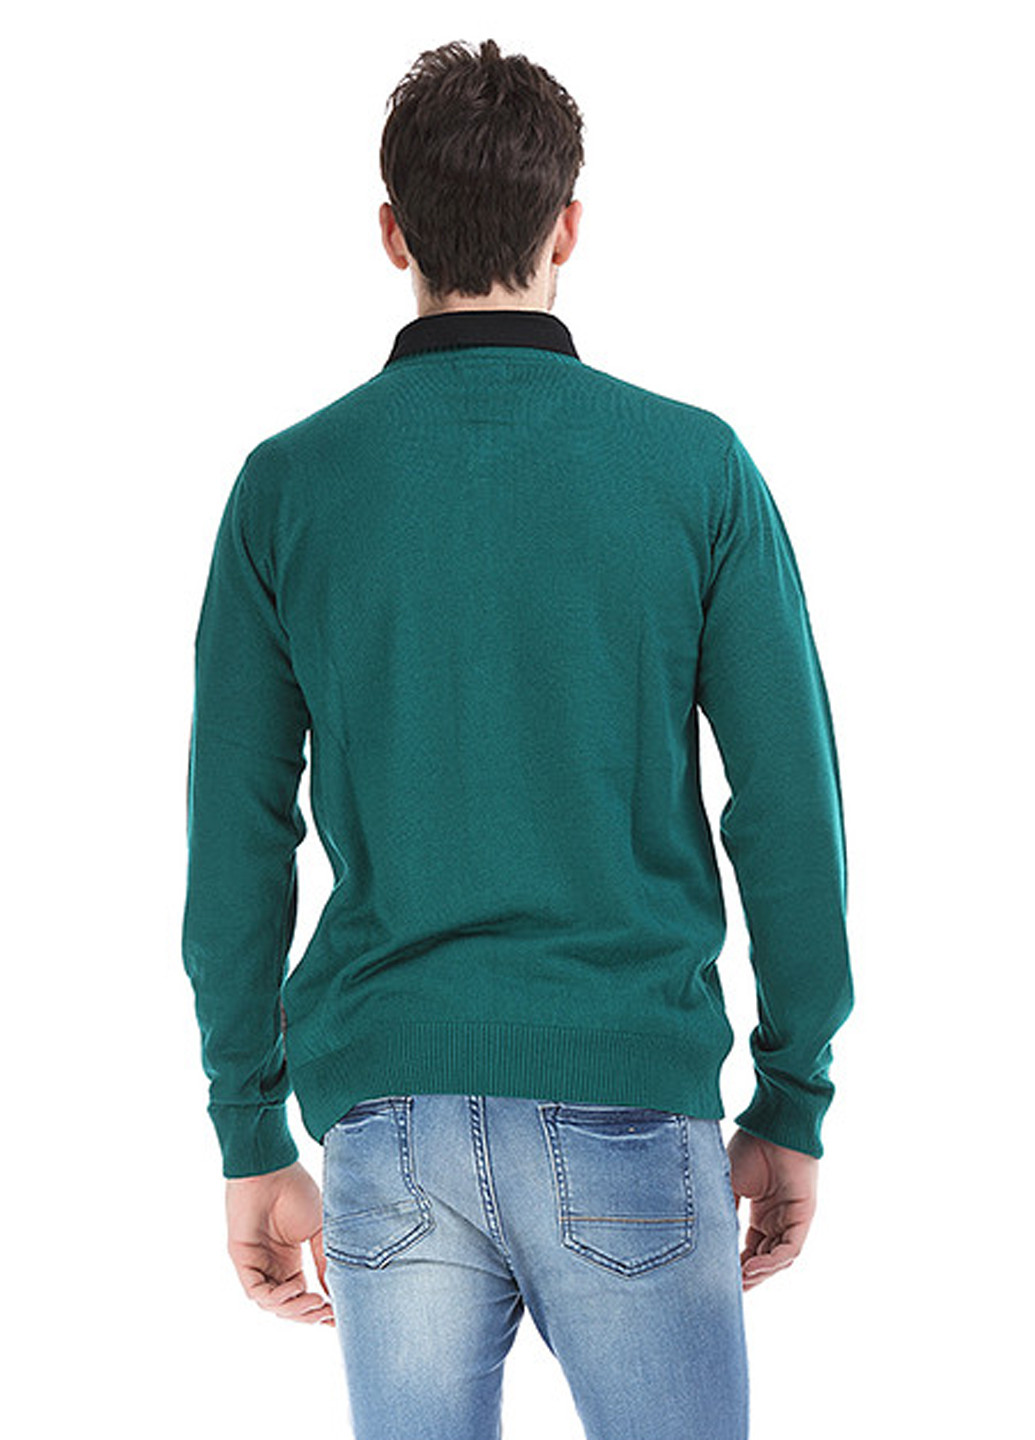 Бледно-зеленый демисезонный пуловер пуловер Яavin